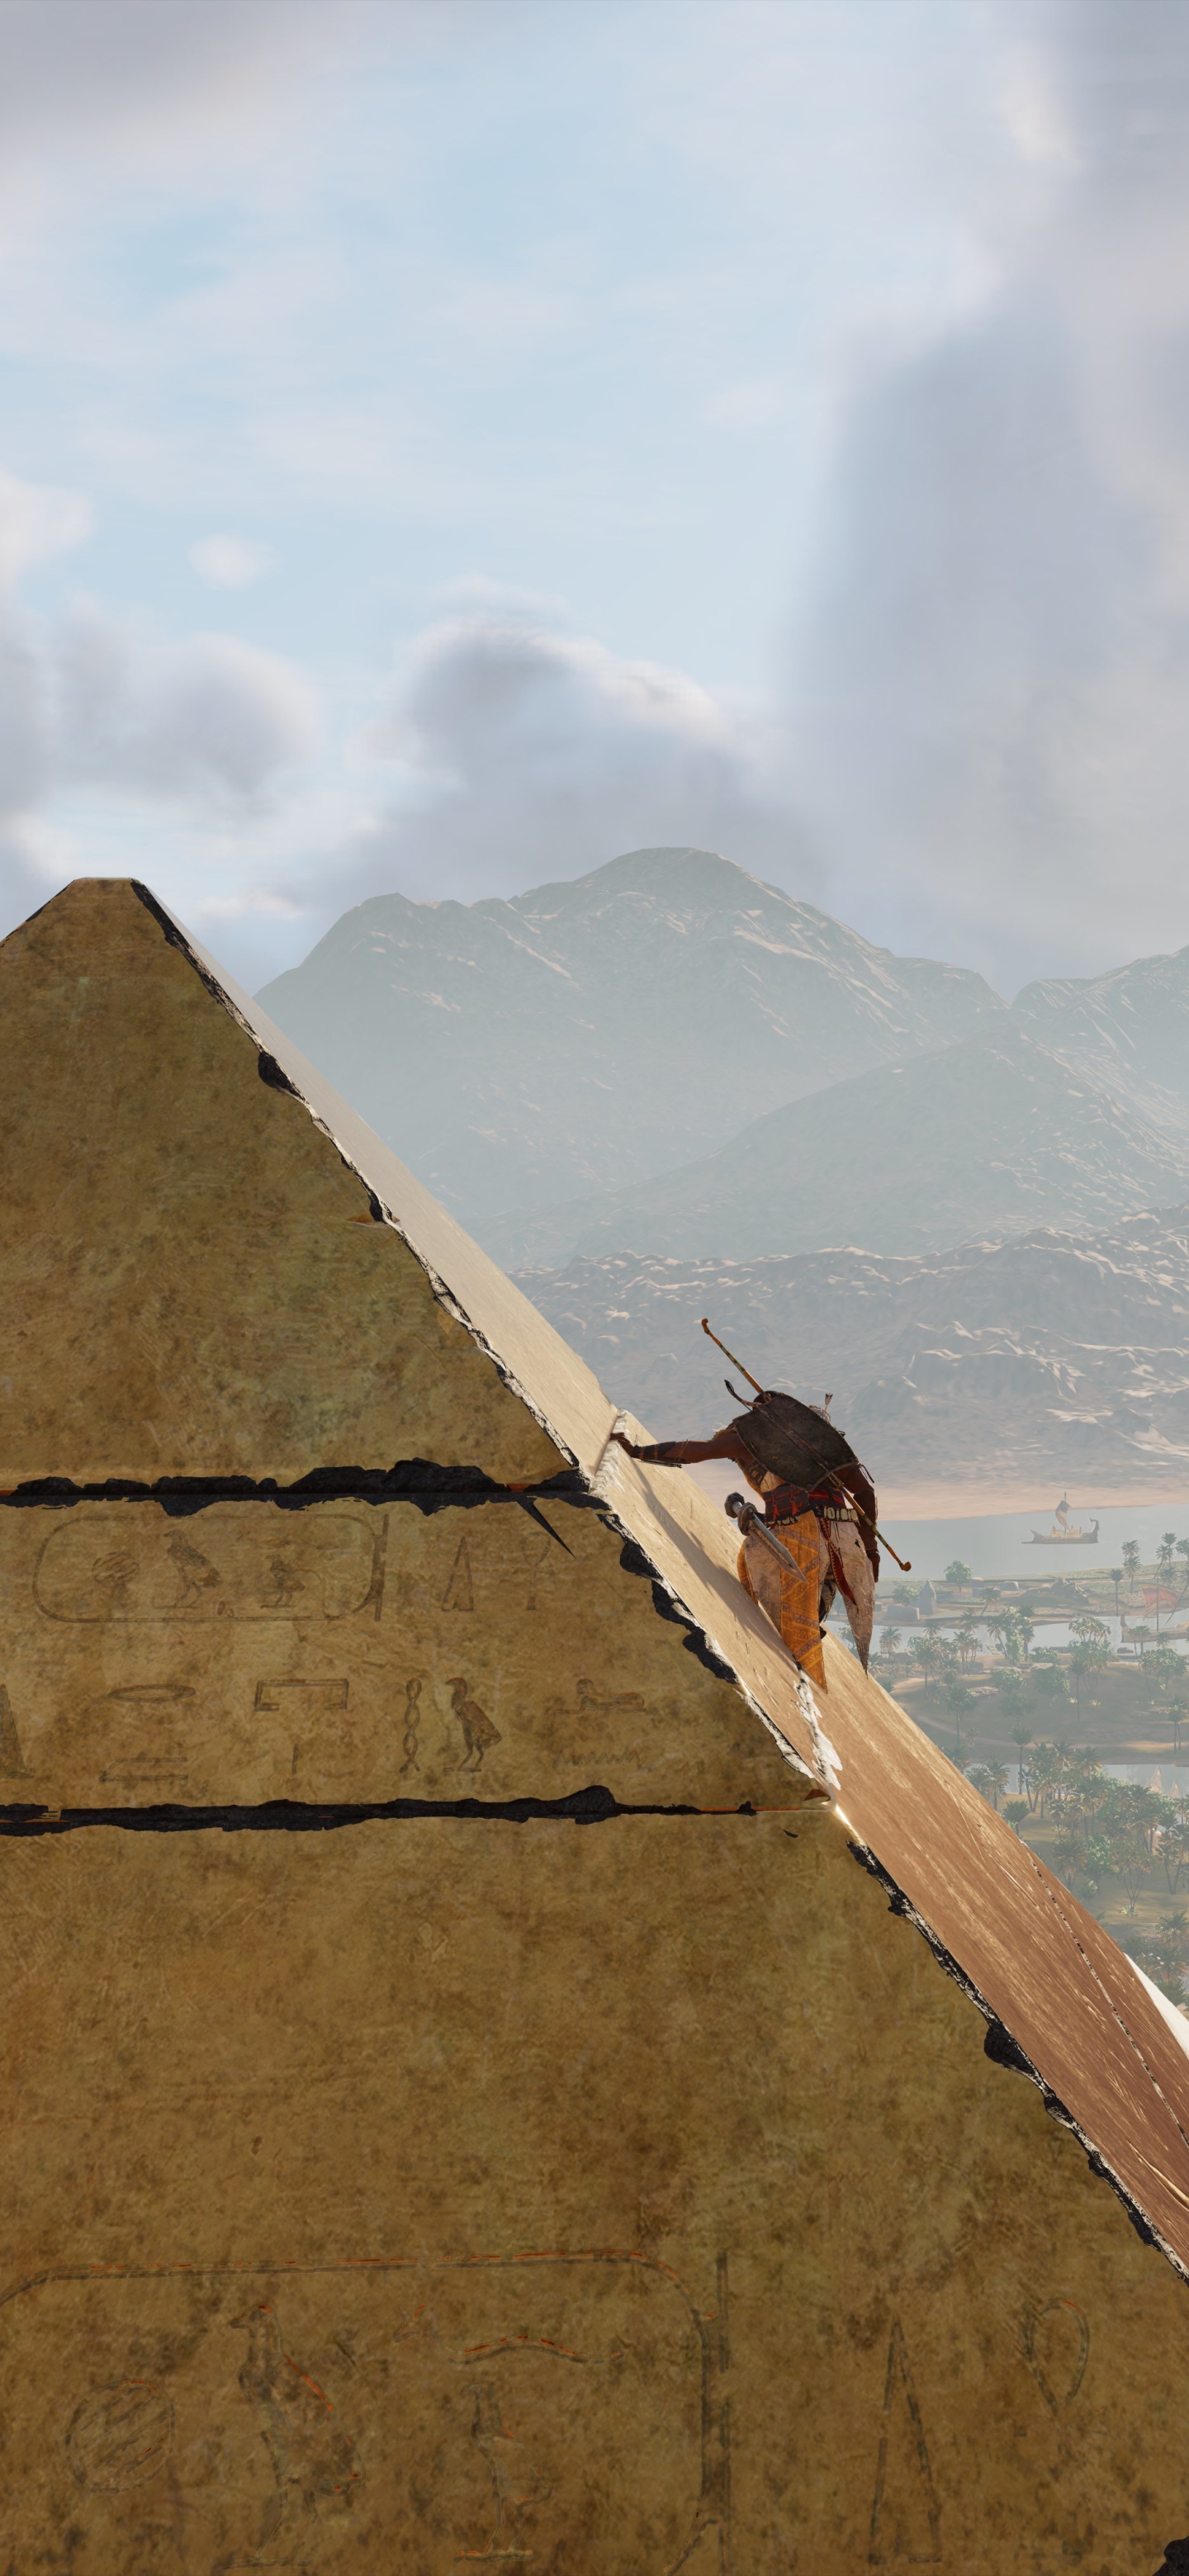 Скачать картинку Видеоигры, Кредо Ассасина, Assassin's Creed: Истоки в телефон бесплатно.